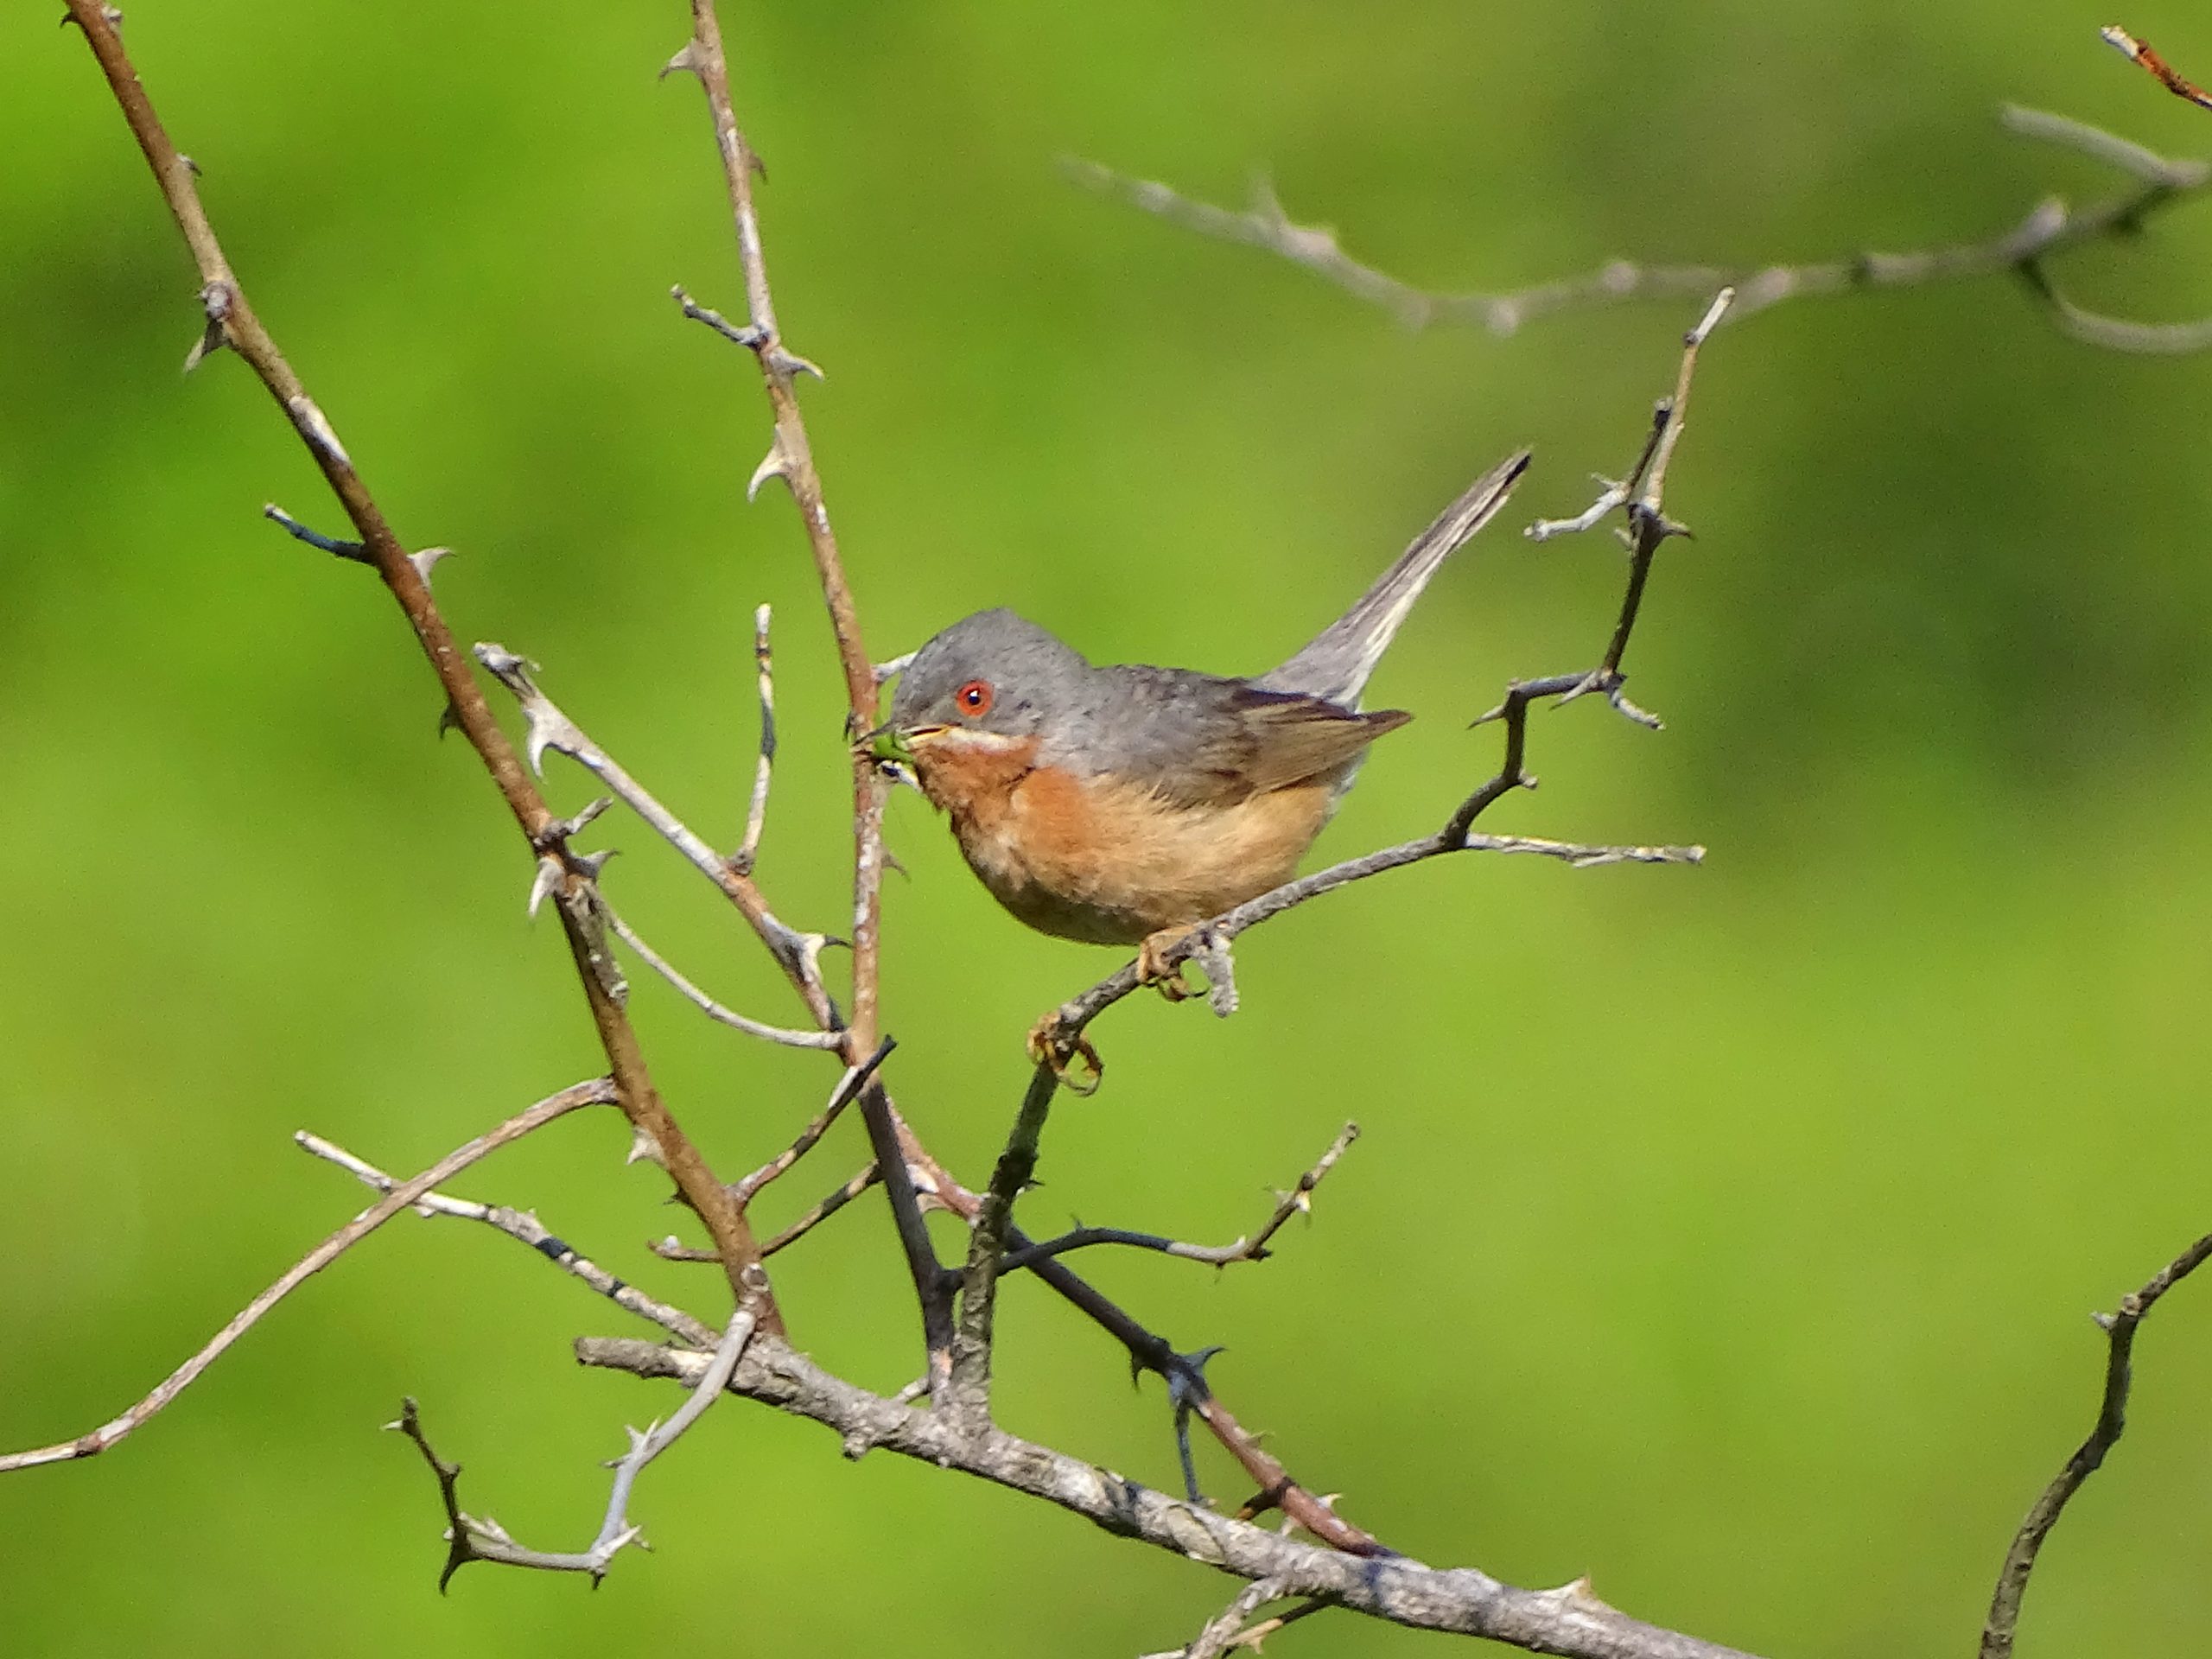 El Grup Au d’Ornitologia detecta 115 especies de aves en las comarcas del sudoeste de la provincia de Castellón